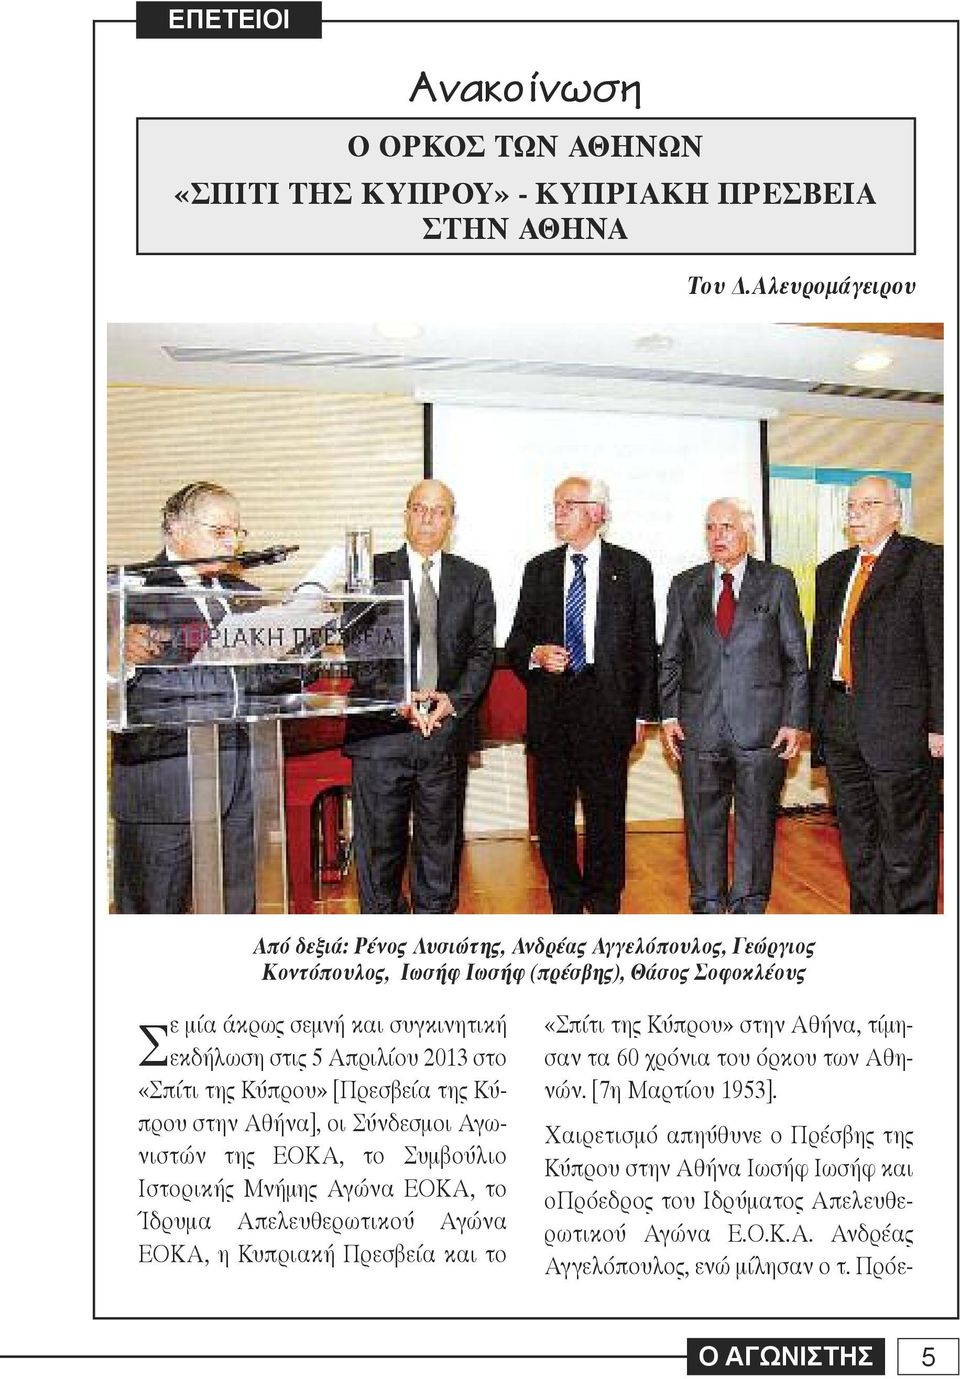 2013 στο «Σπίτι της Κύπρου» [Πρεσβεία της Κύπρου στην Αθήνα], οι Σύνδεσμοι Αγωνιστών της ΕΟΚΑ, το Συμβούλιο Ιστορικής Μνήμης Αγώνα ΕΟΚΑ, το Ίδρυμα Απελευθερωτικού Αγώνα ΕΟΚΑ, η Κυπριακή